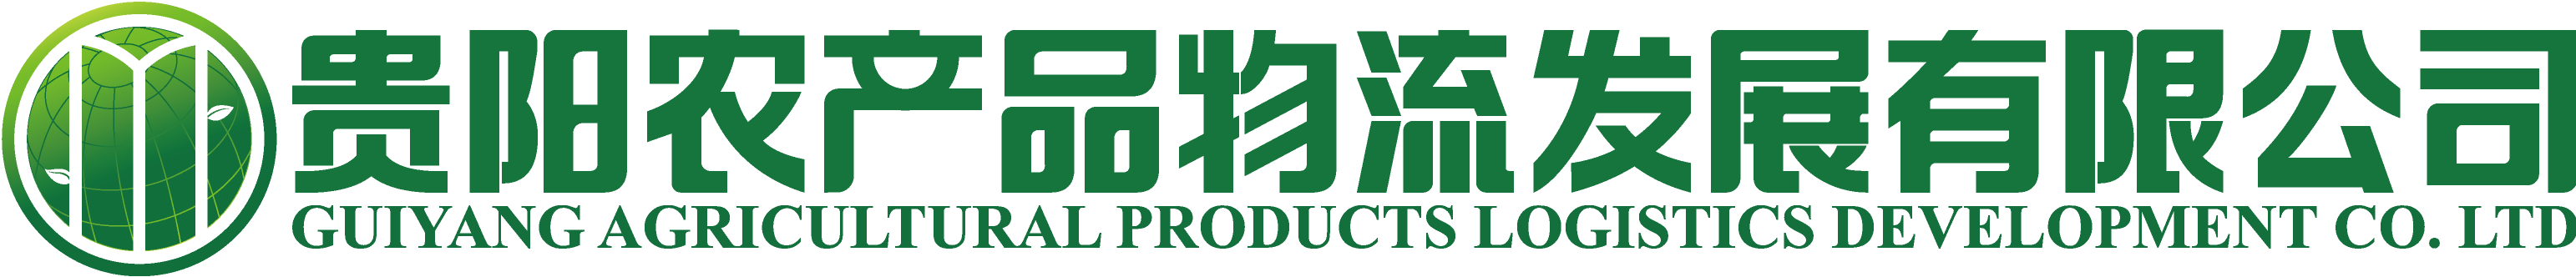 贵农公司logo新版_15